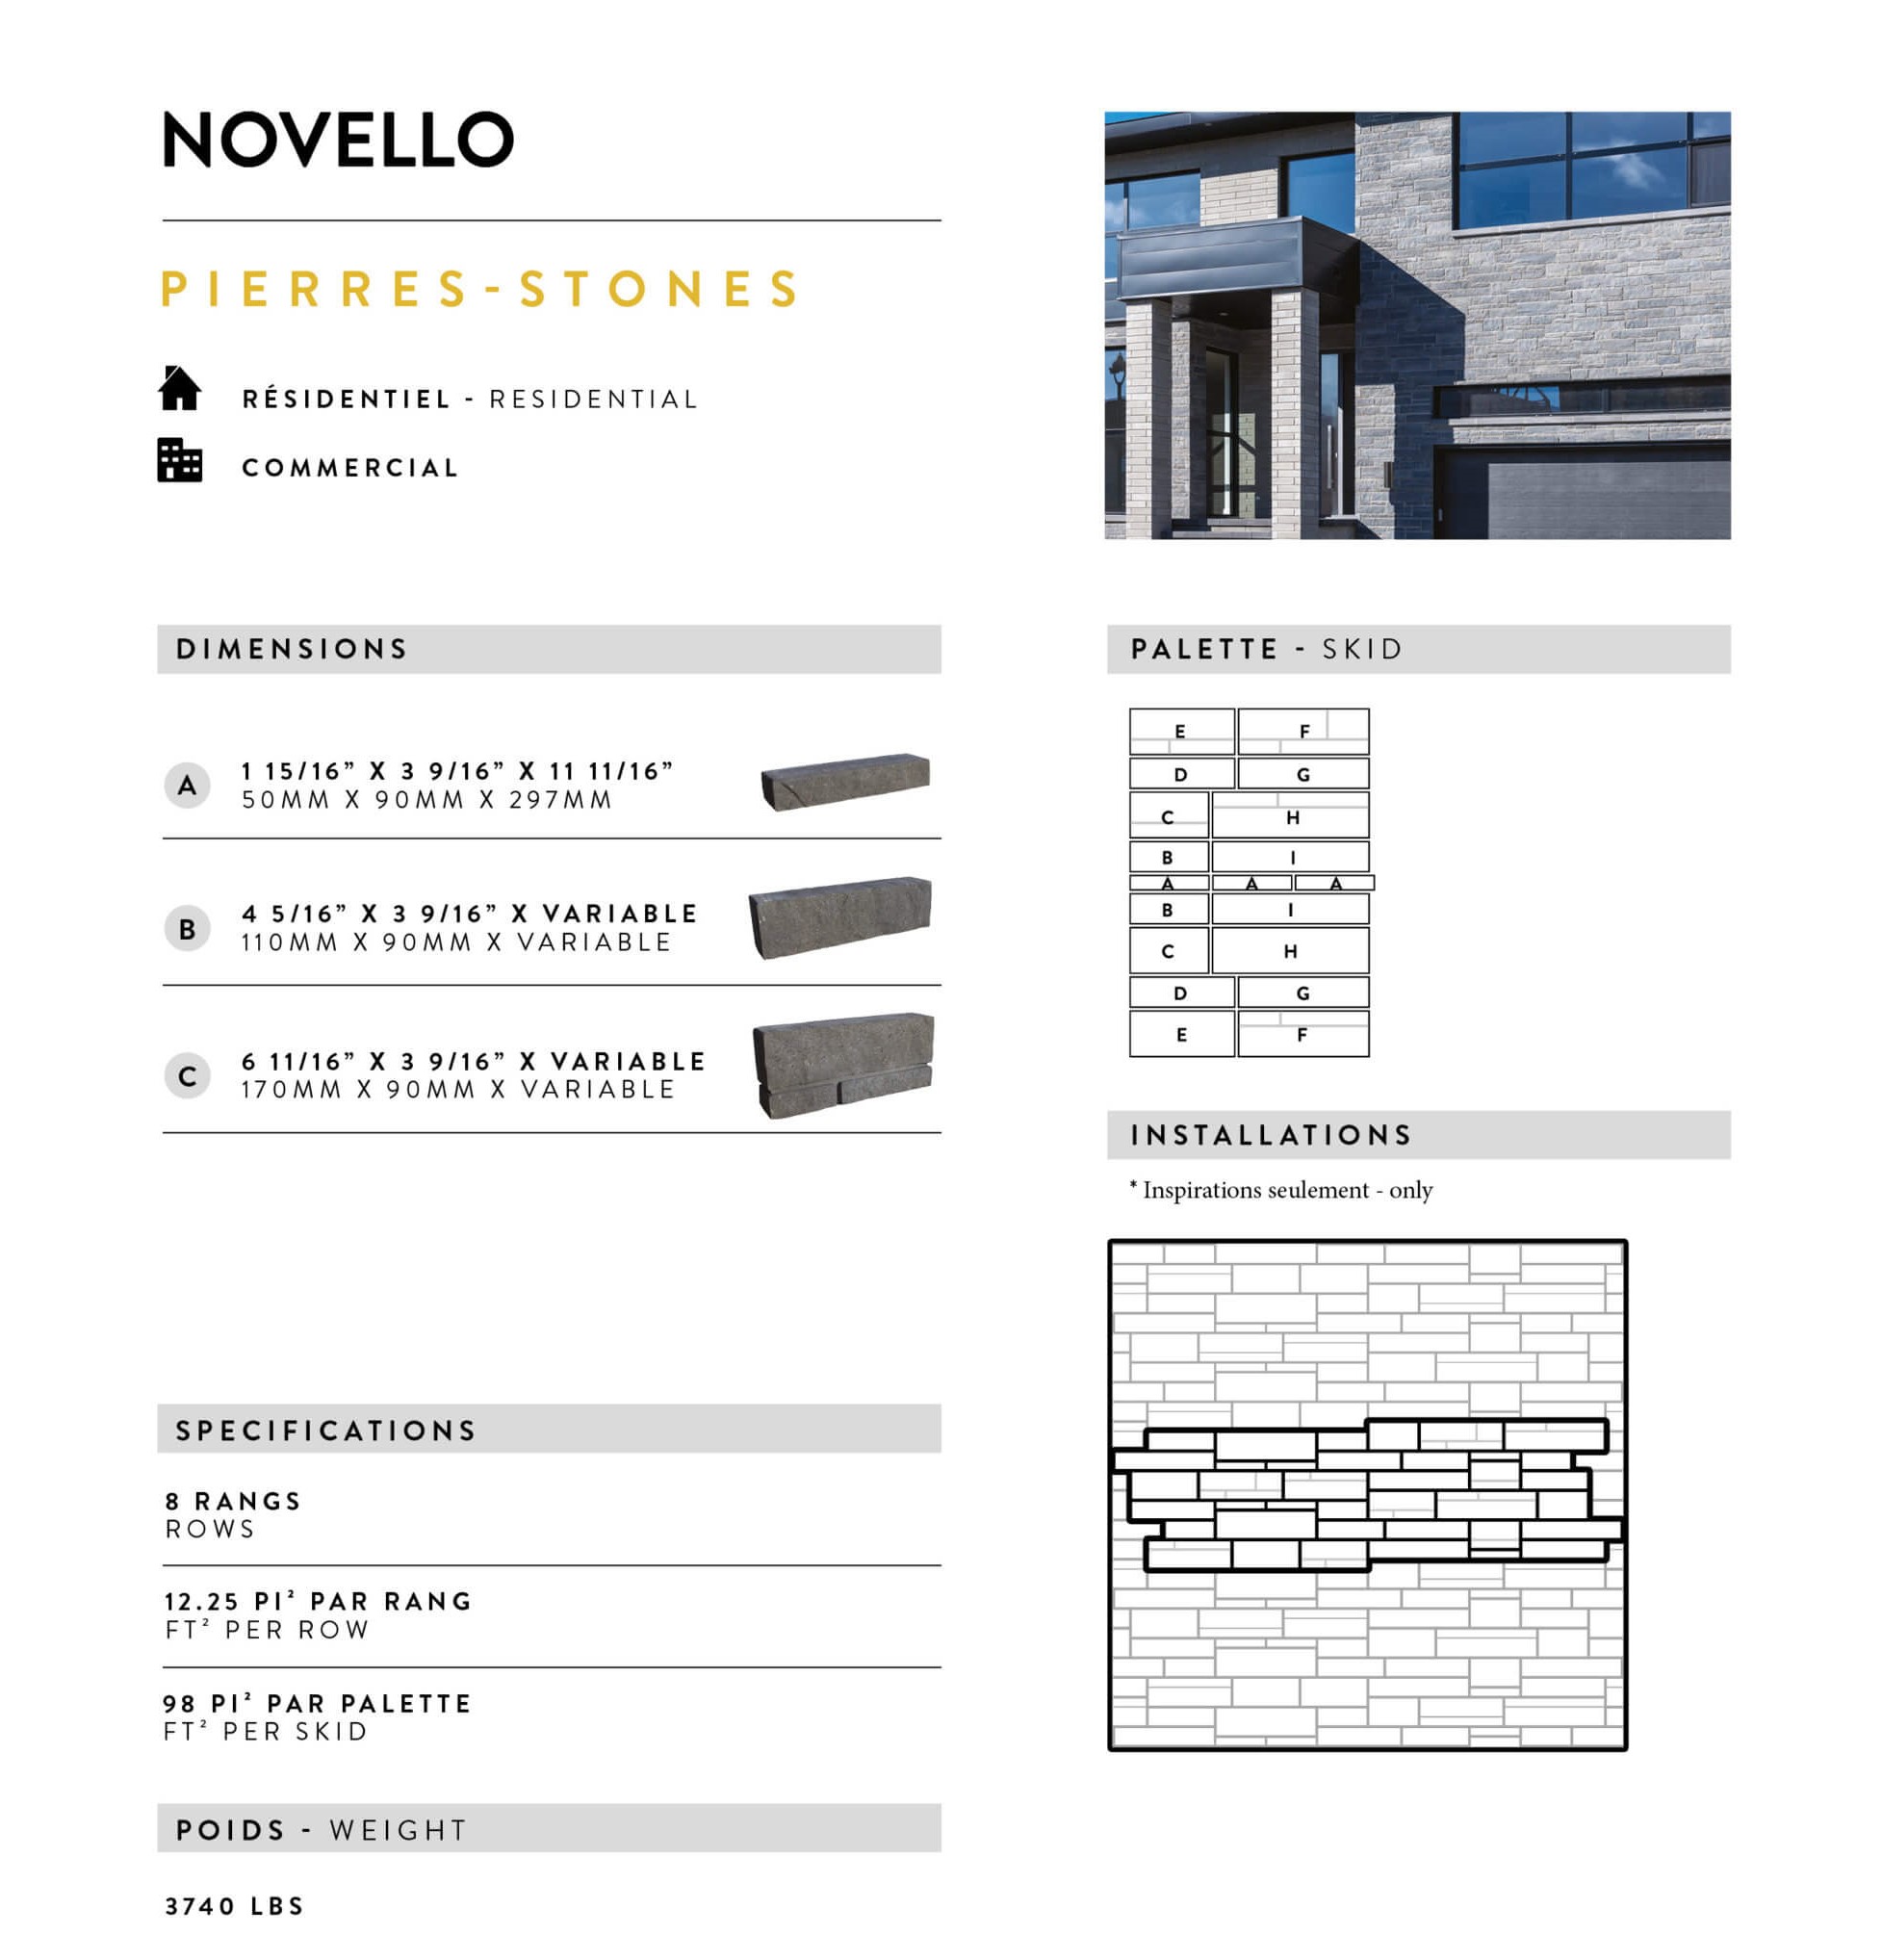 Novello stone data sheet